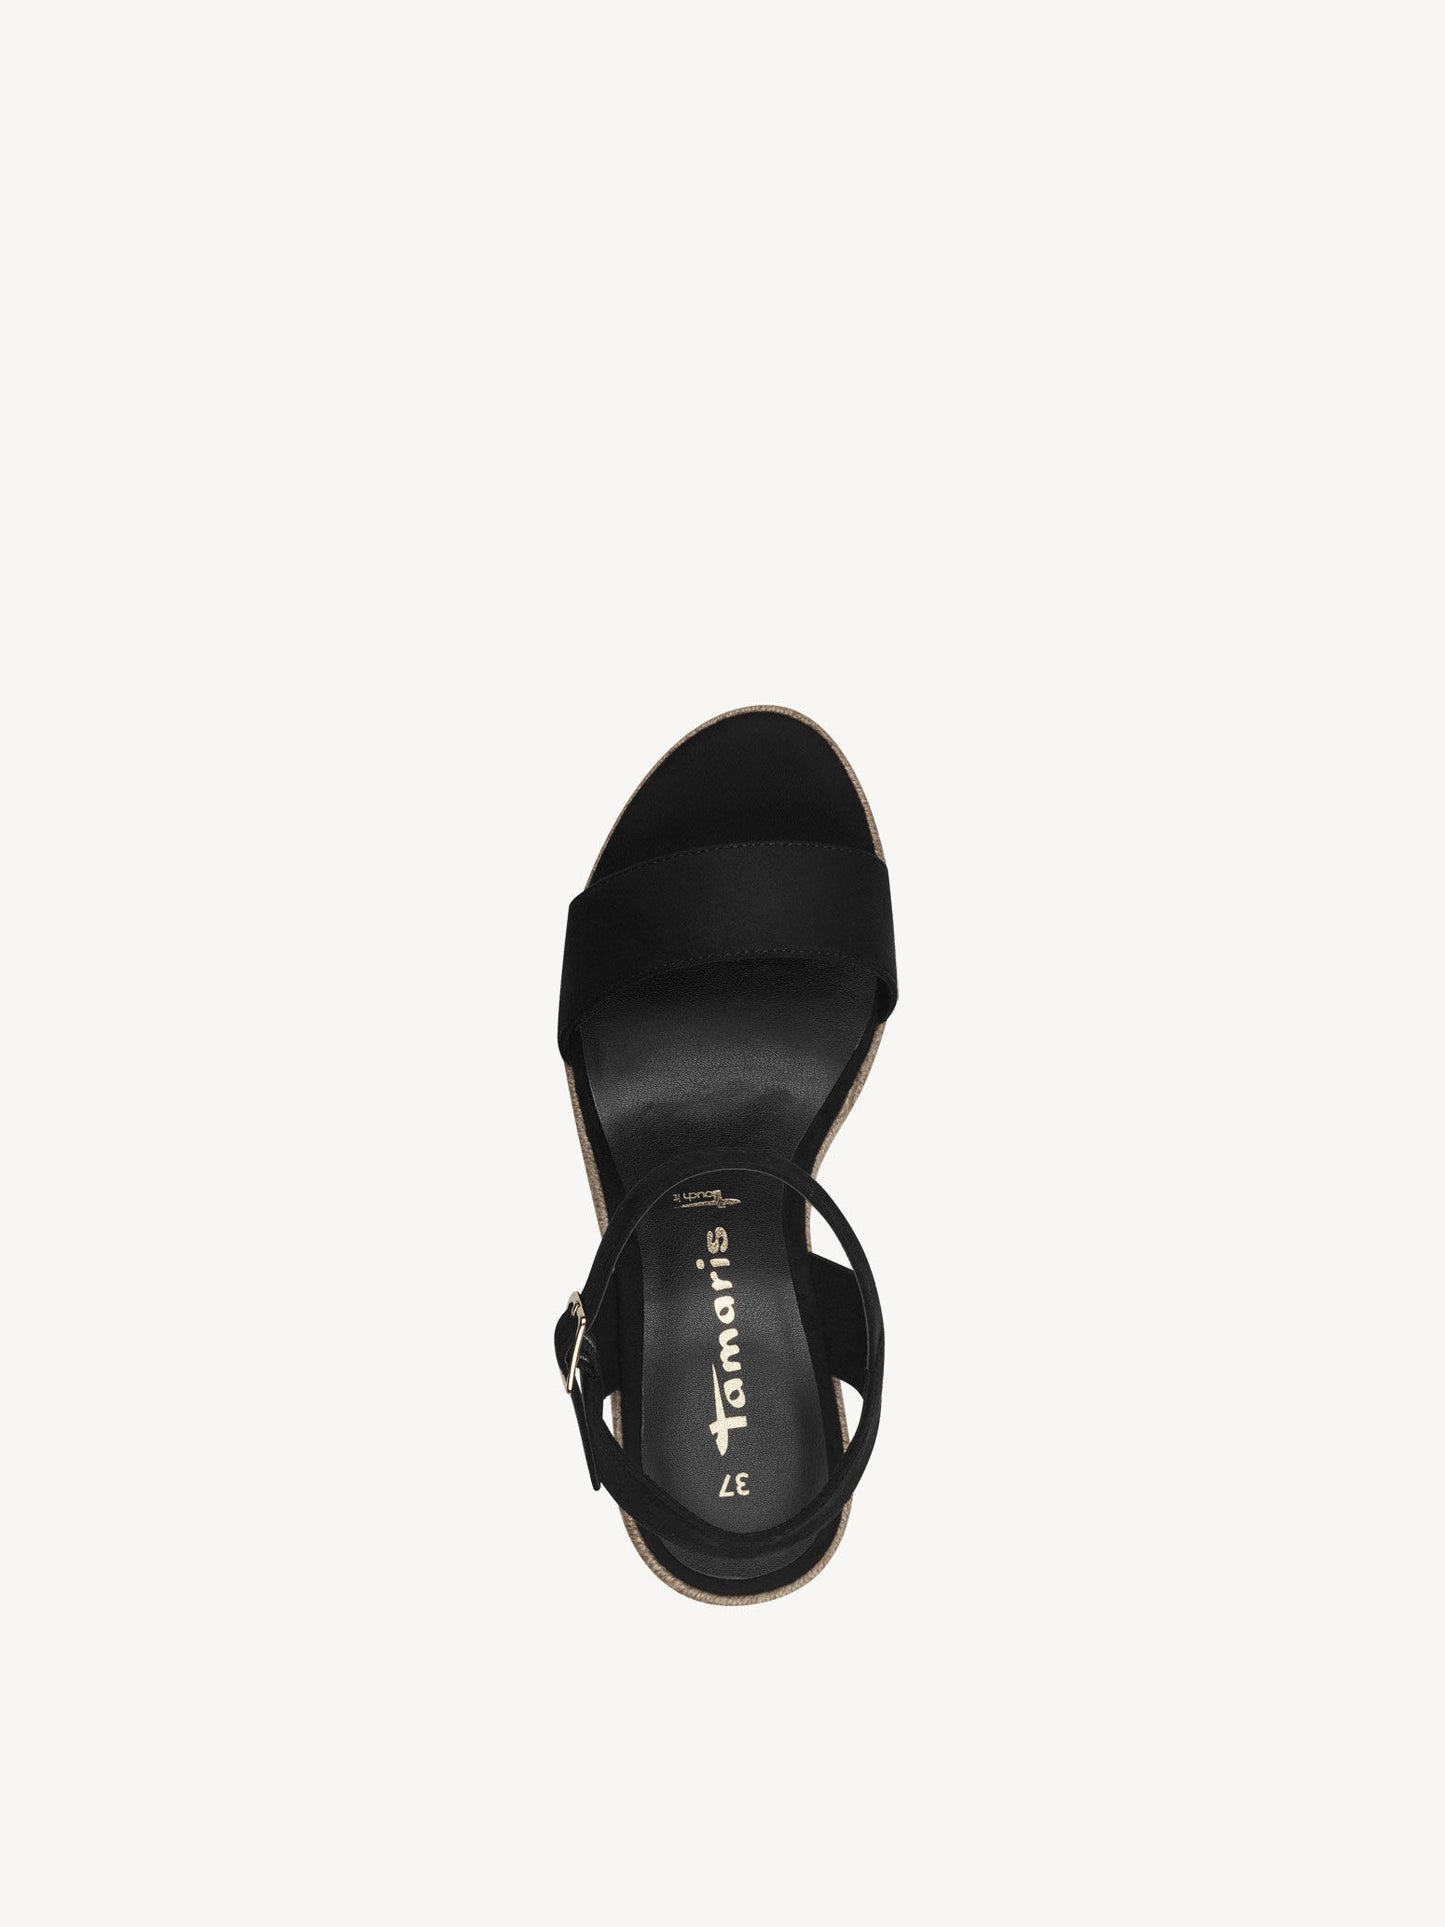 Tamaris Women's 1-28300-42 Wedge Heel Sandals Black